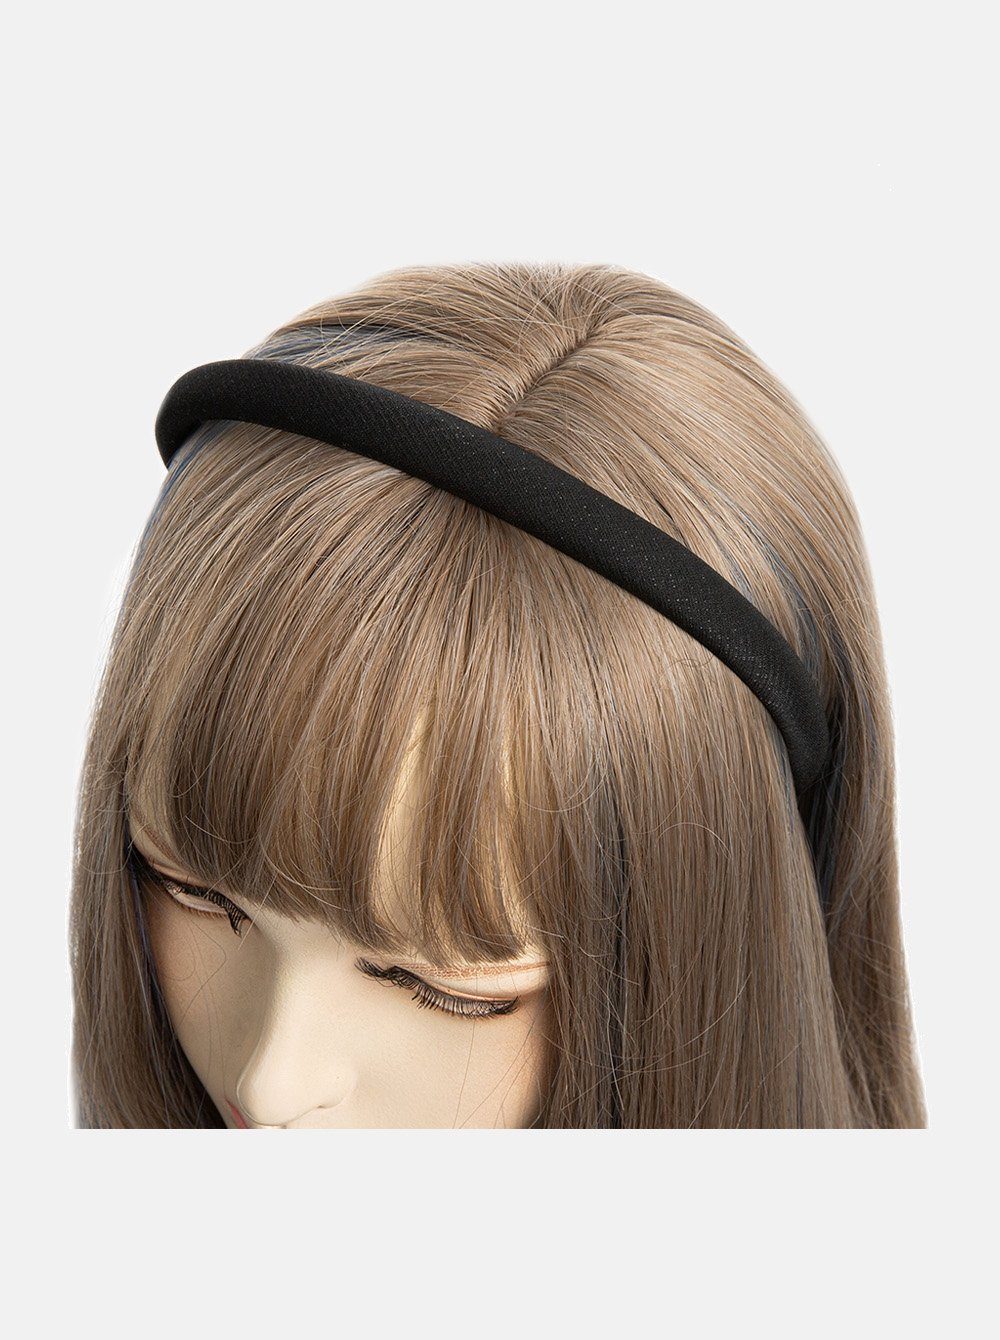 axy Haarreif Haarreif aus Stoff mit feinen Metallicfäden, gepolstertes Wunderschön Stirnband Haarschmuck Schwarz